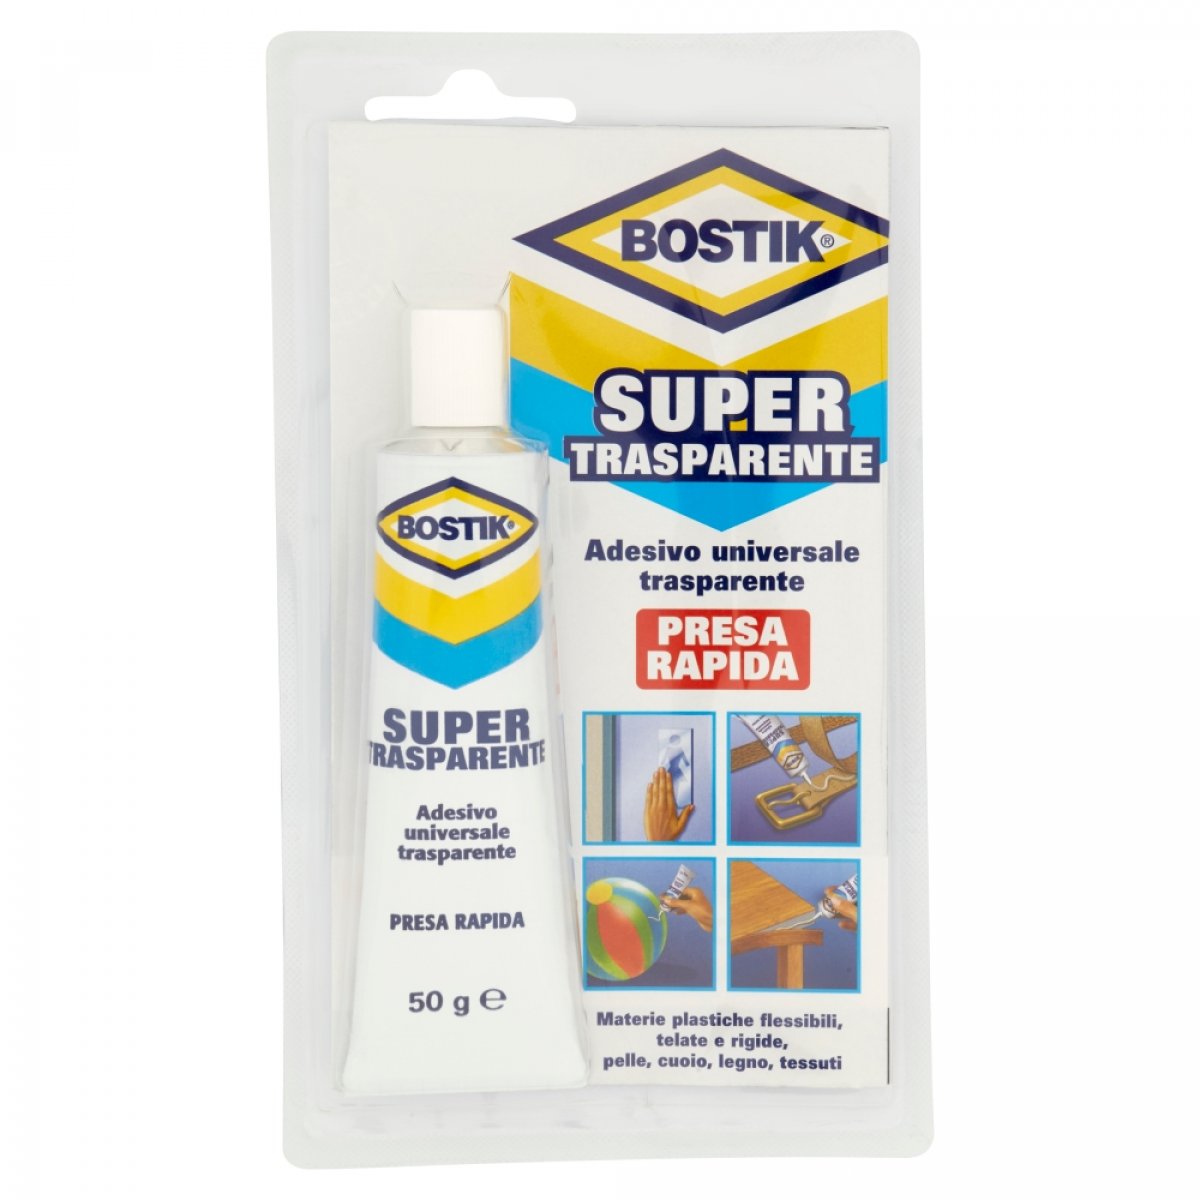 Supertrasparente blister 50gr - Bostik 